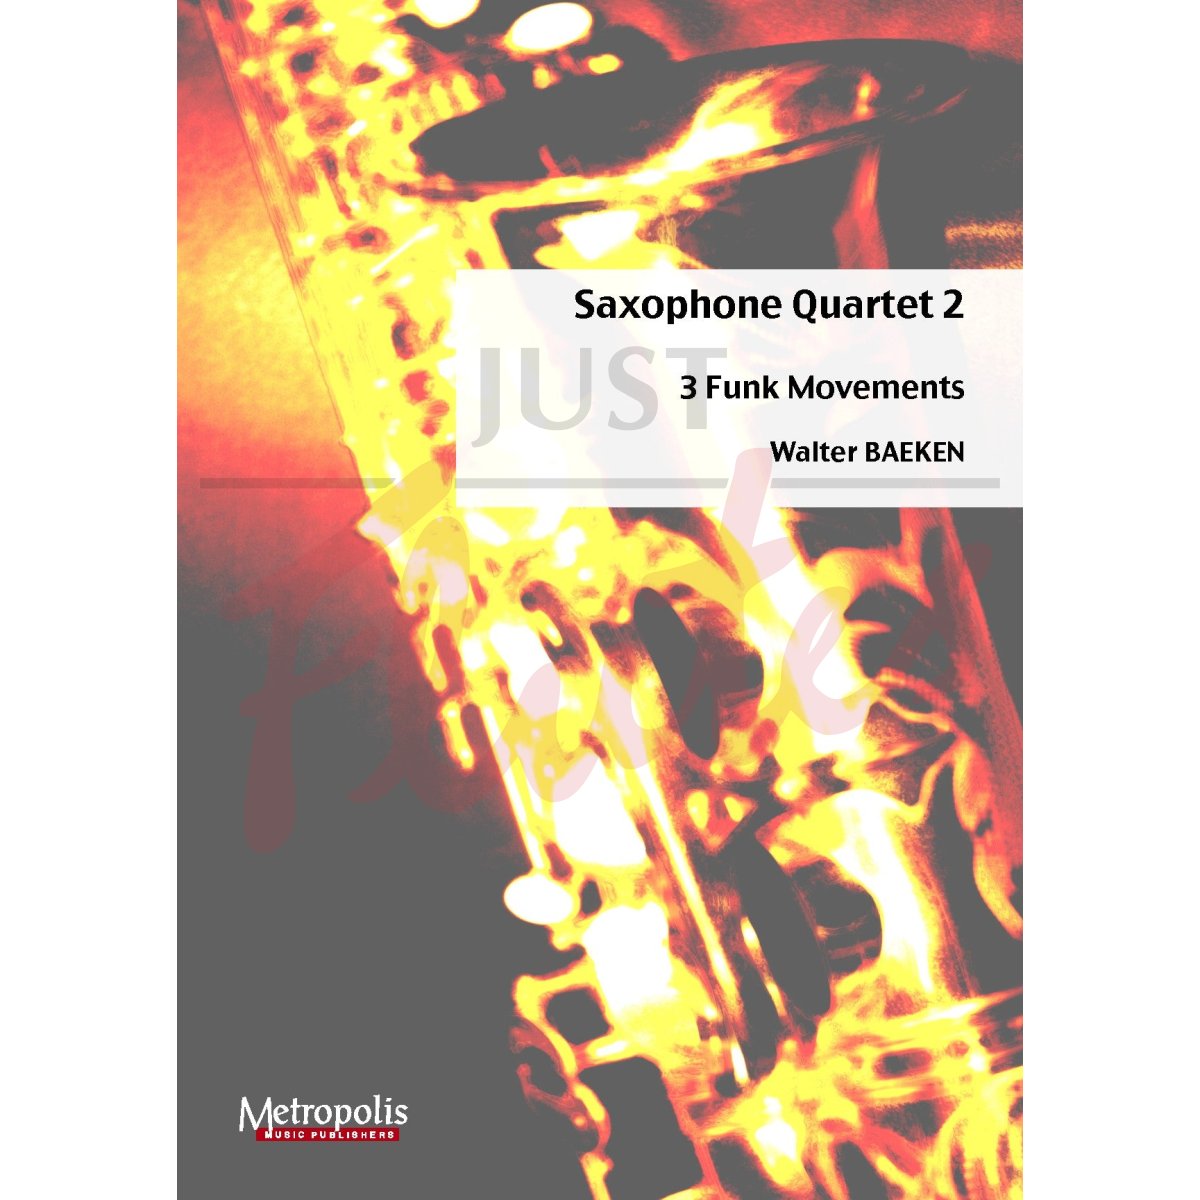 Saxophone Quartet 2